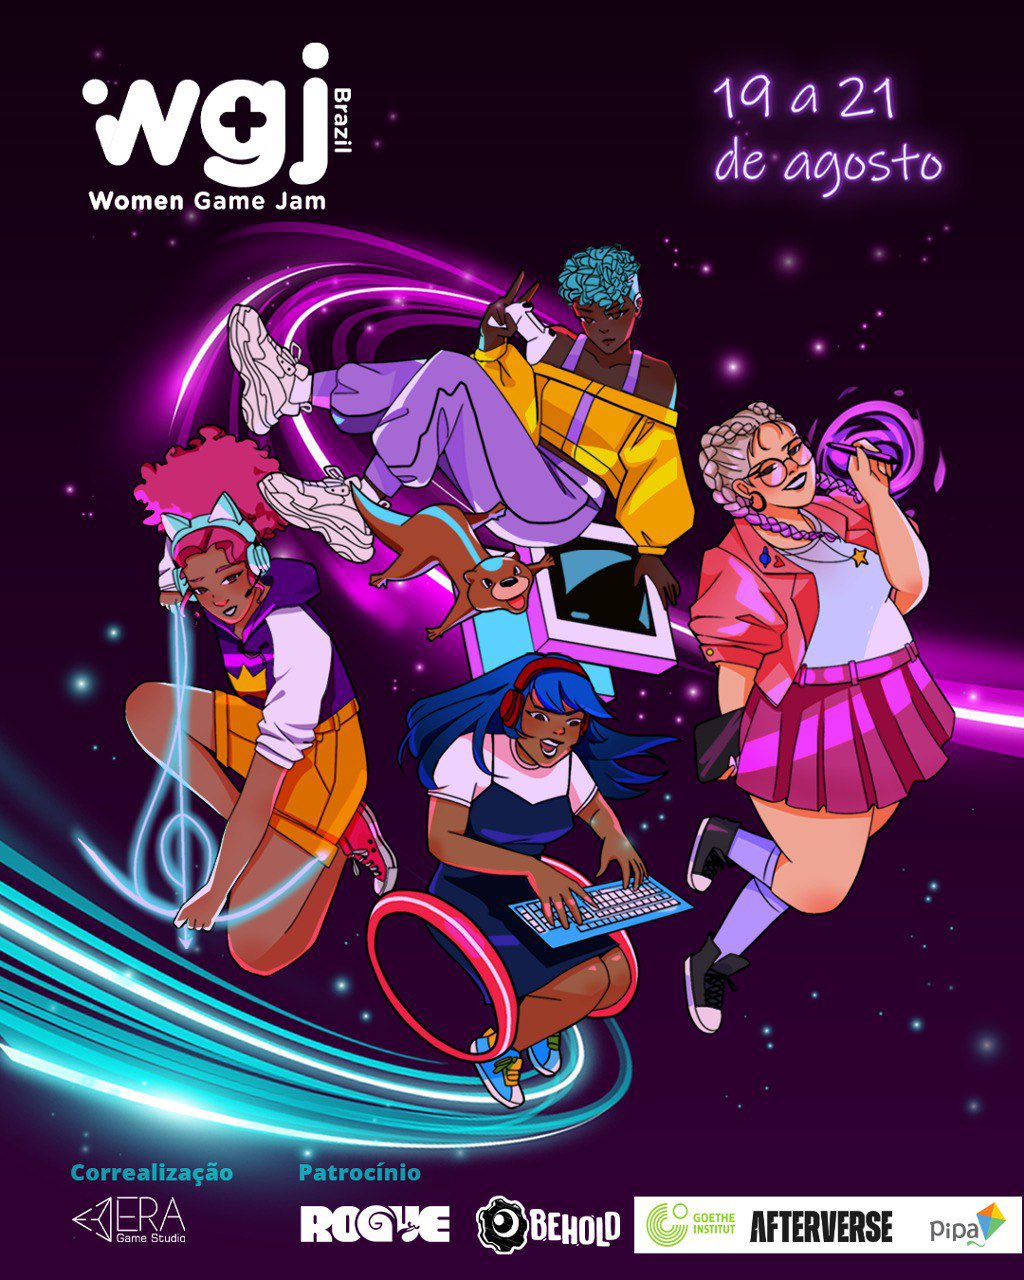 Mulheres e games - Goethe-Institut Brasil